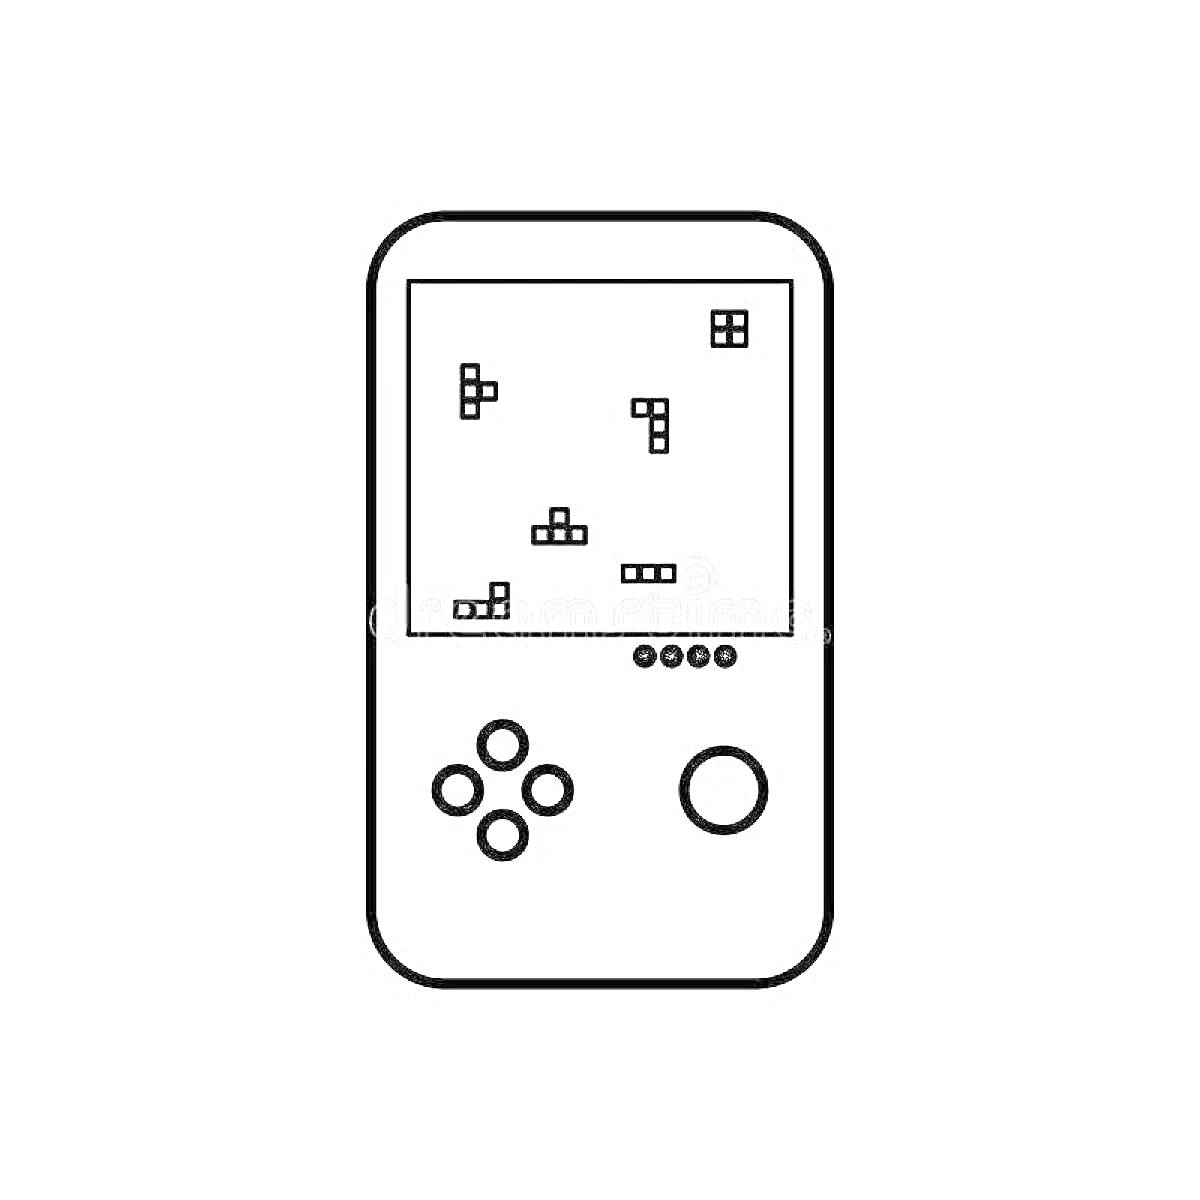 Портативная игровой консоль с экраном тетриса и кнопками управления